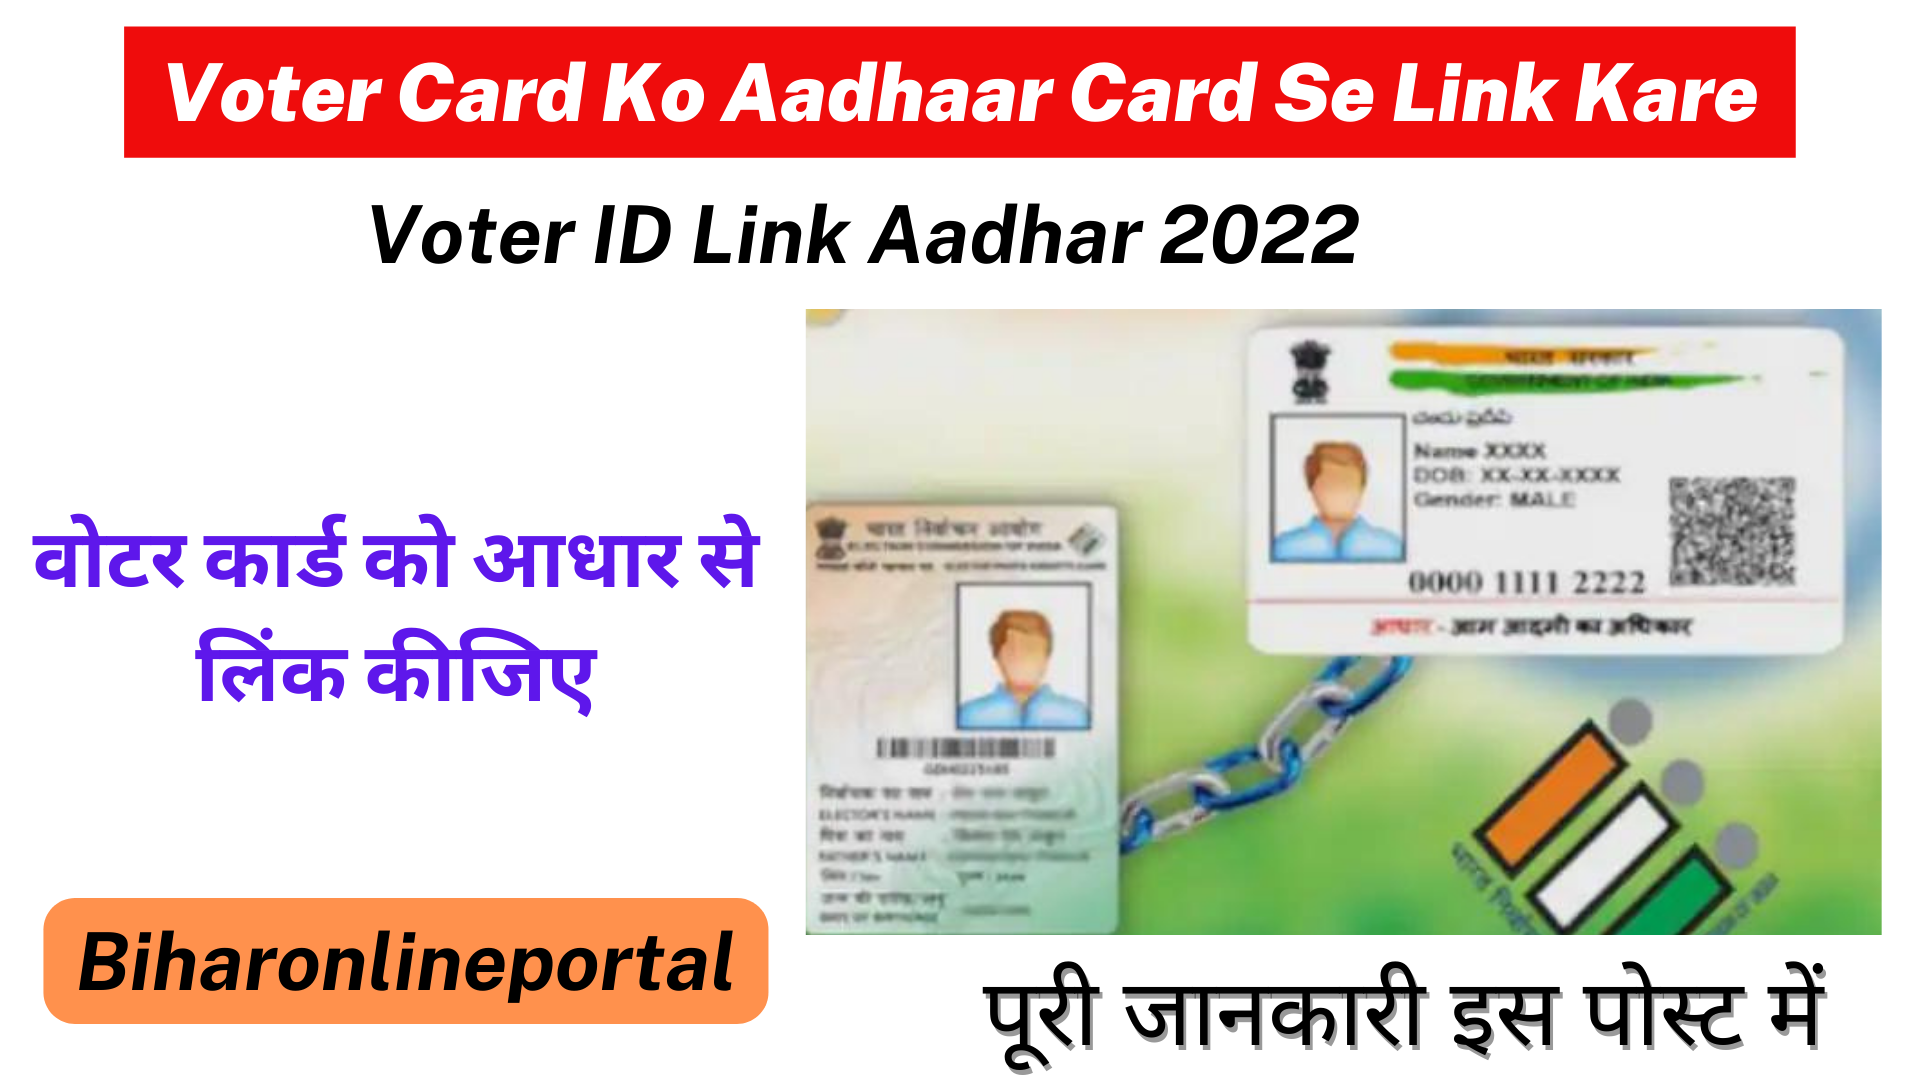 Voter Card Ko Aadhaar Card Se Link Kare